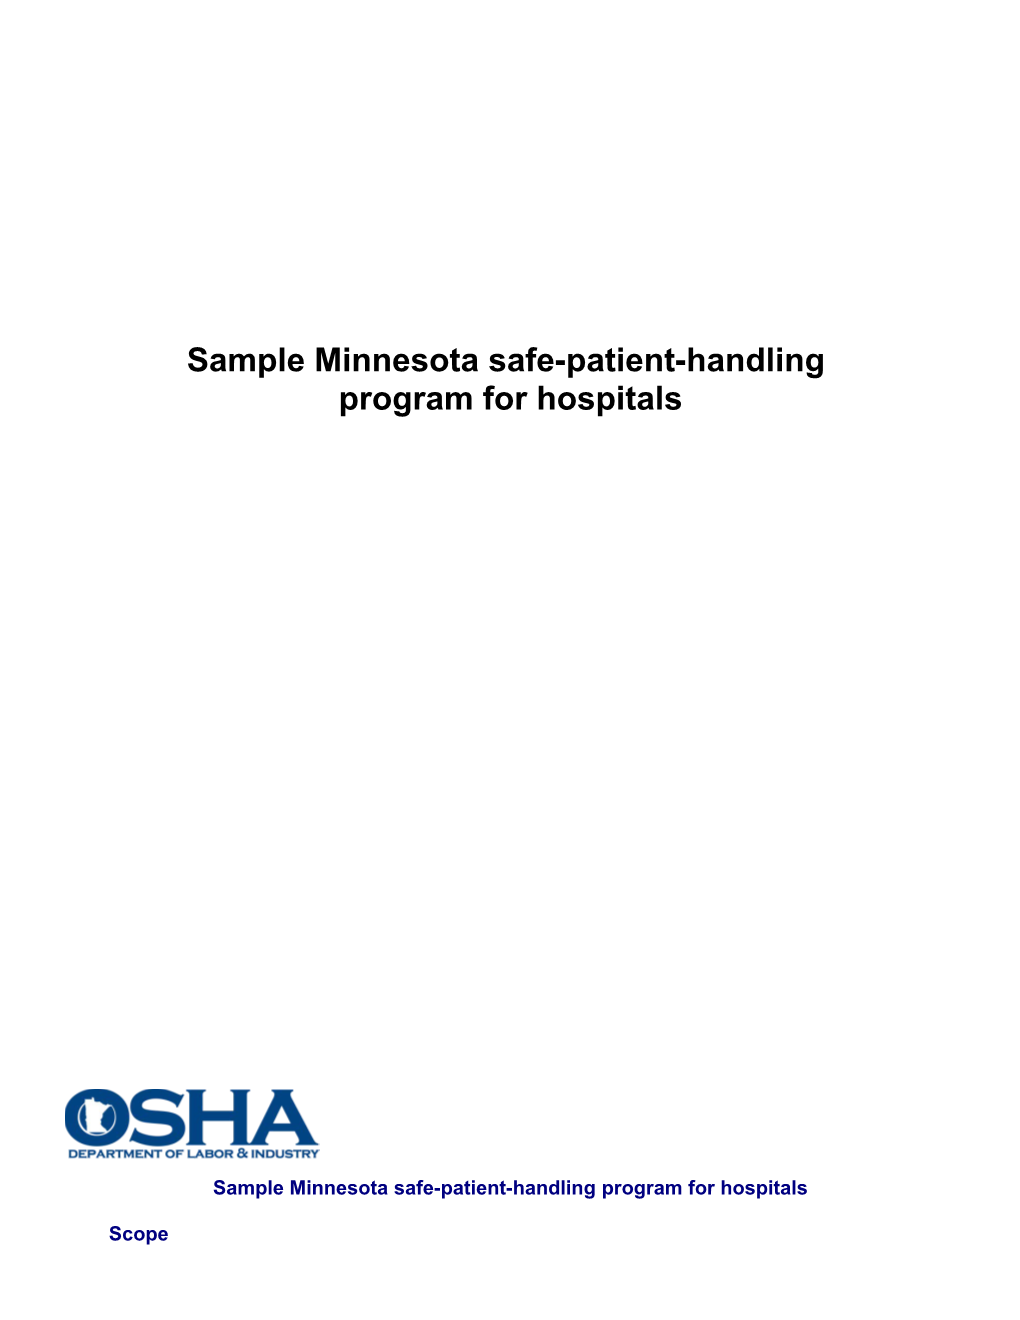 Sample Minnesota Safe-Patient-Handling Program for Hospitals